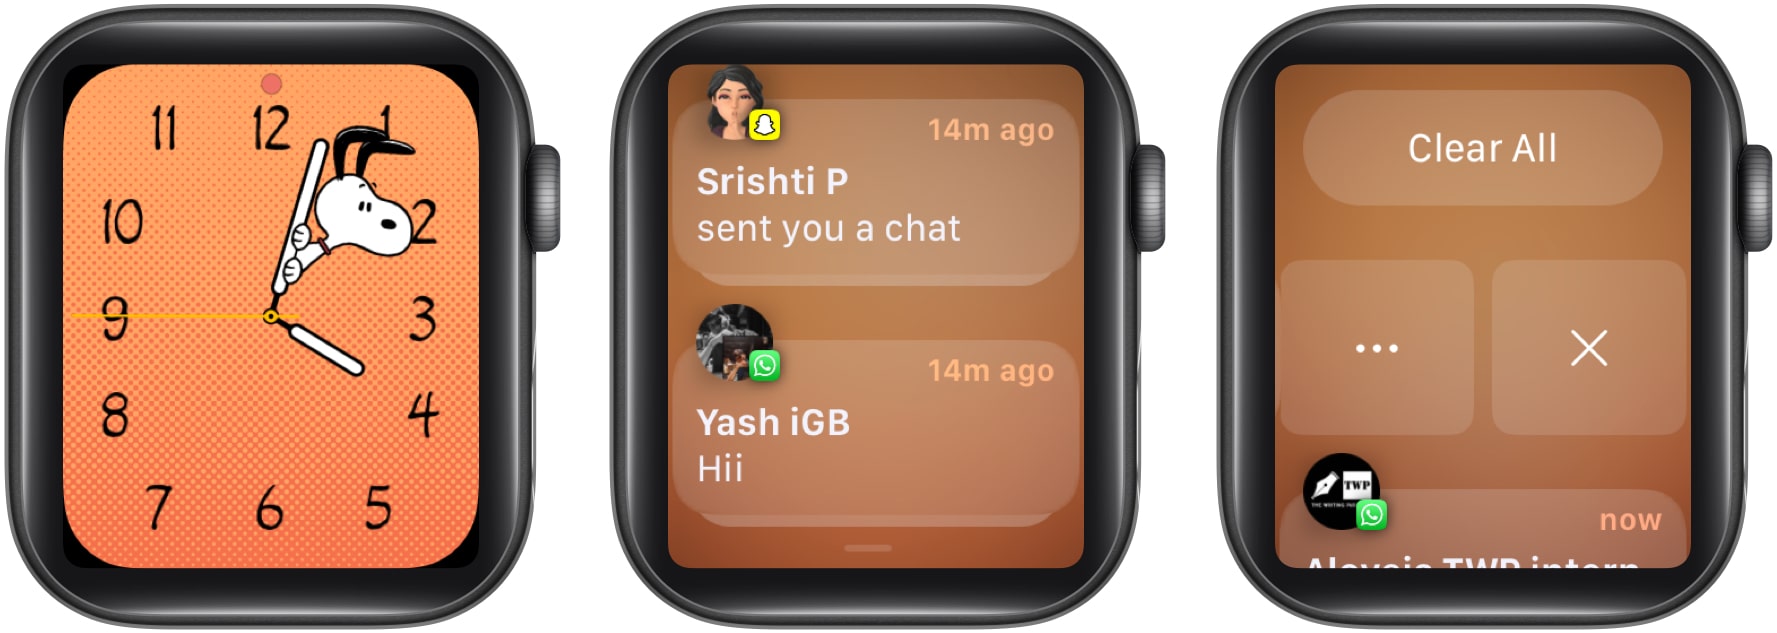 Clear unread notifications on Apple Watch